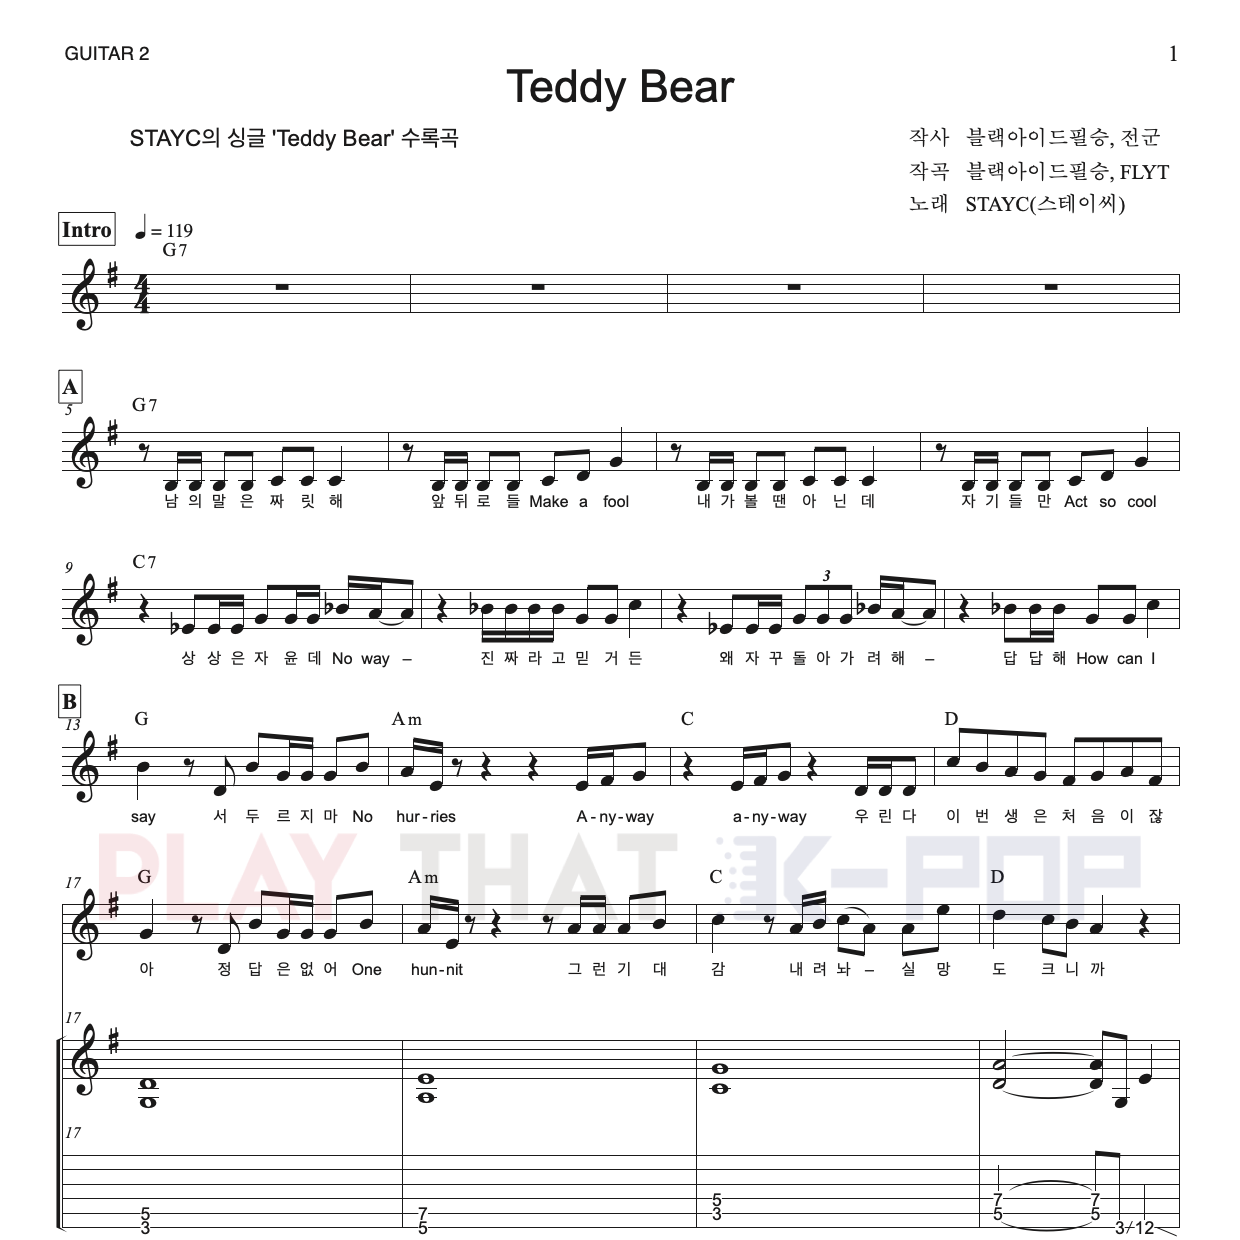 Teddy Bear (테디베어)